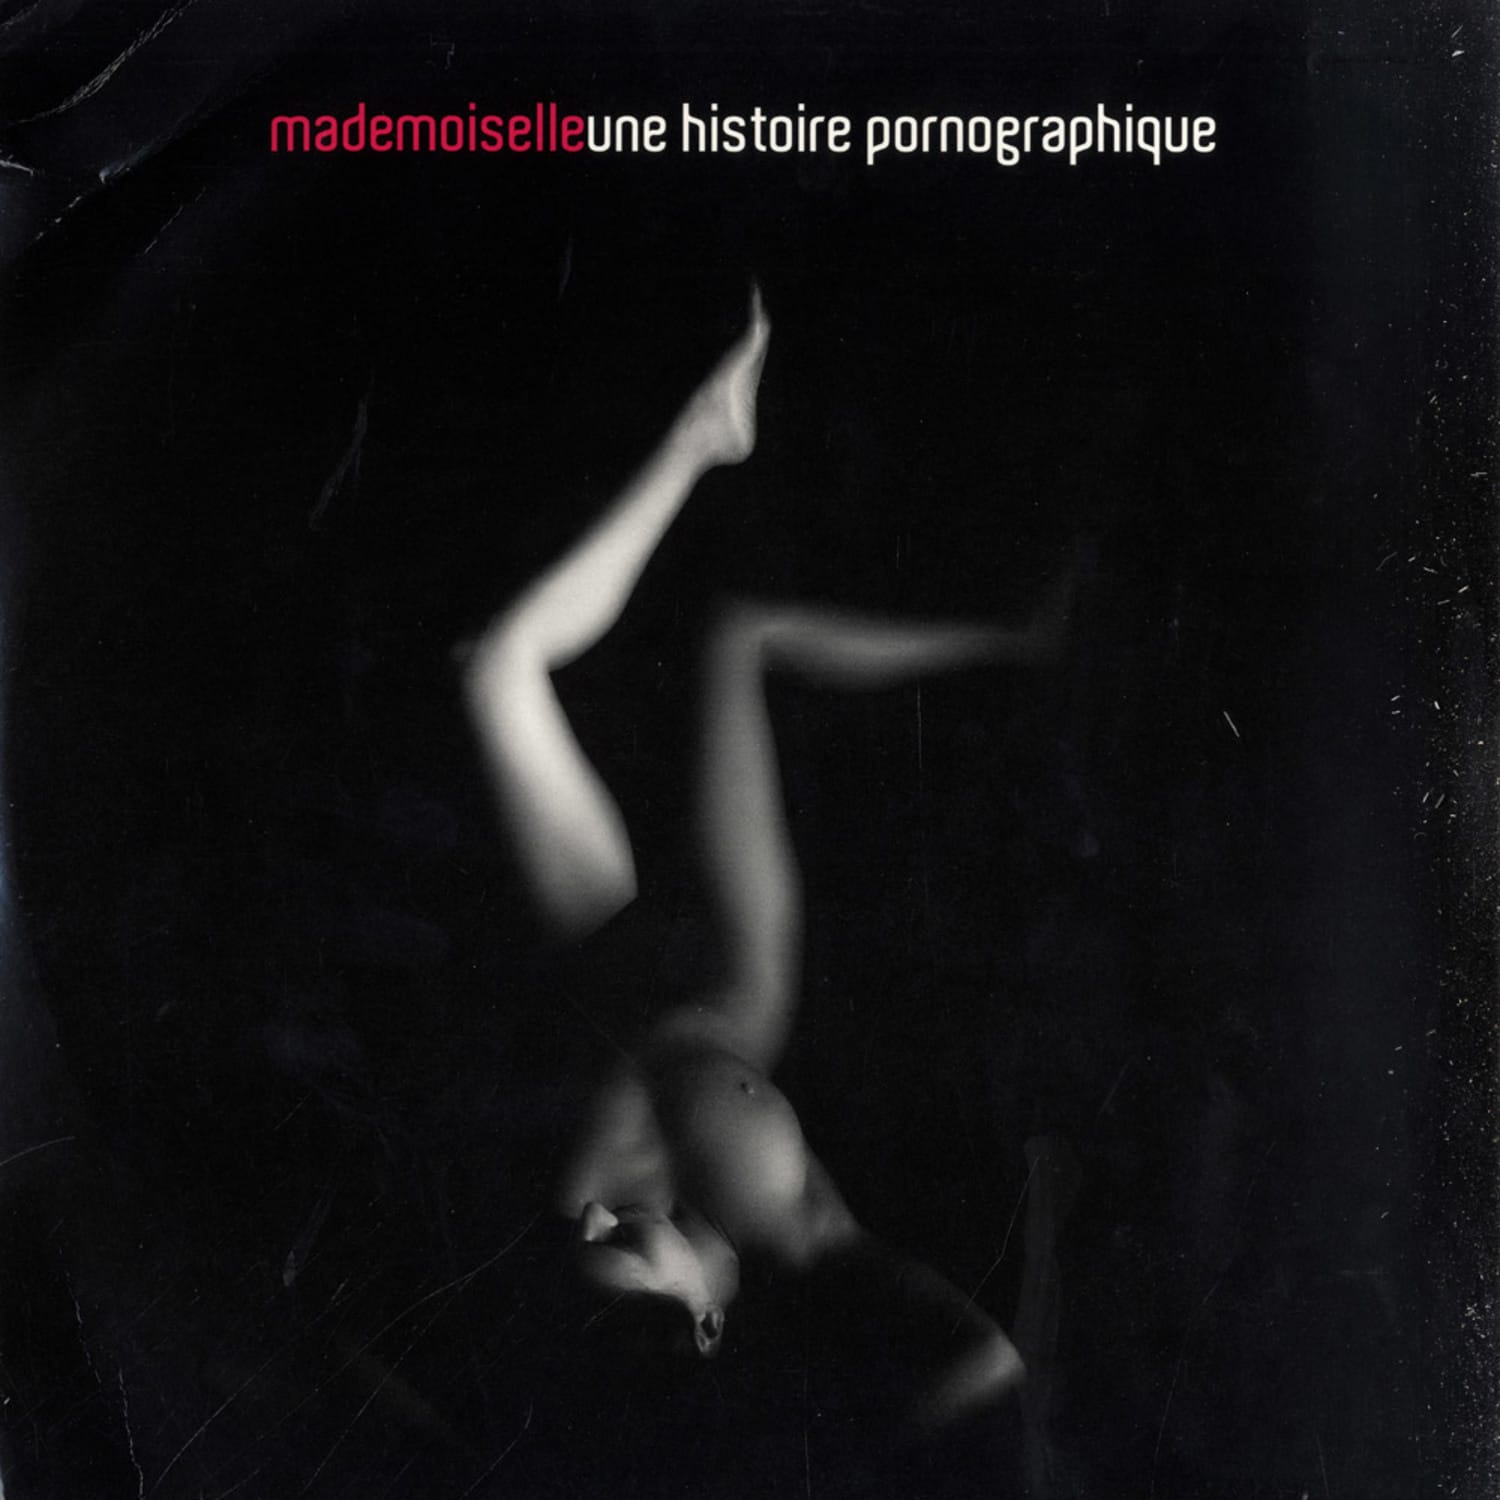 Mademoiselle - UNA HISTOIRE PORNOGRAPHIQUE